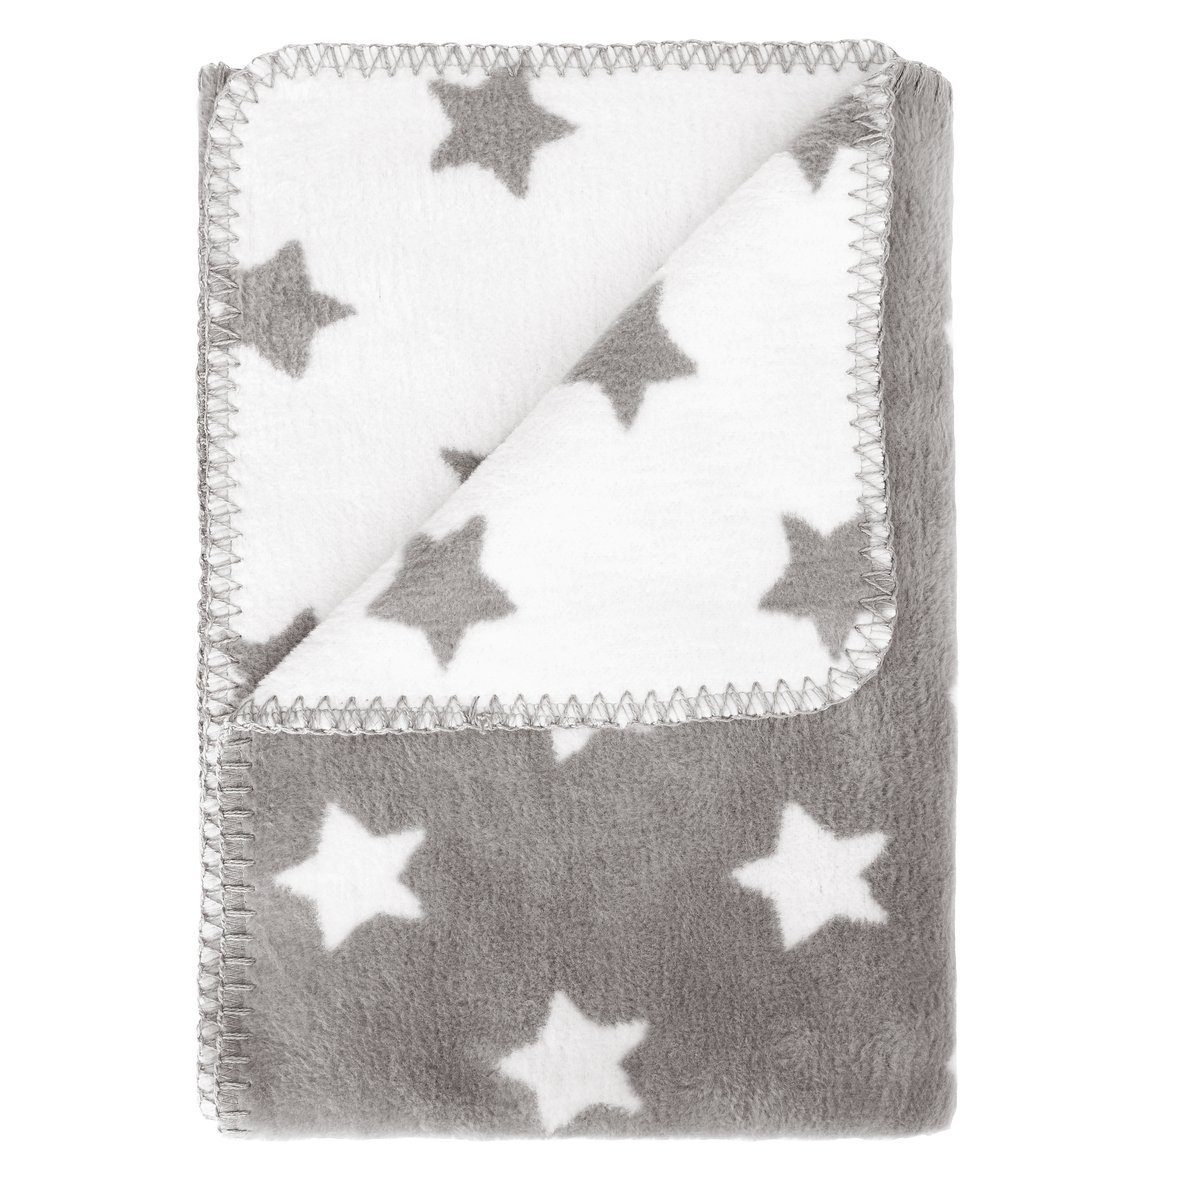 Babydecke perfekt für Kinderwagen, Babyschale, Krabbeldecke, Babybett, kids&me, kuschelig weiche Decke für Babys mit Sternen - ÖKOTEX